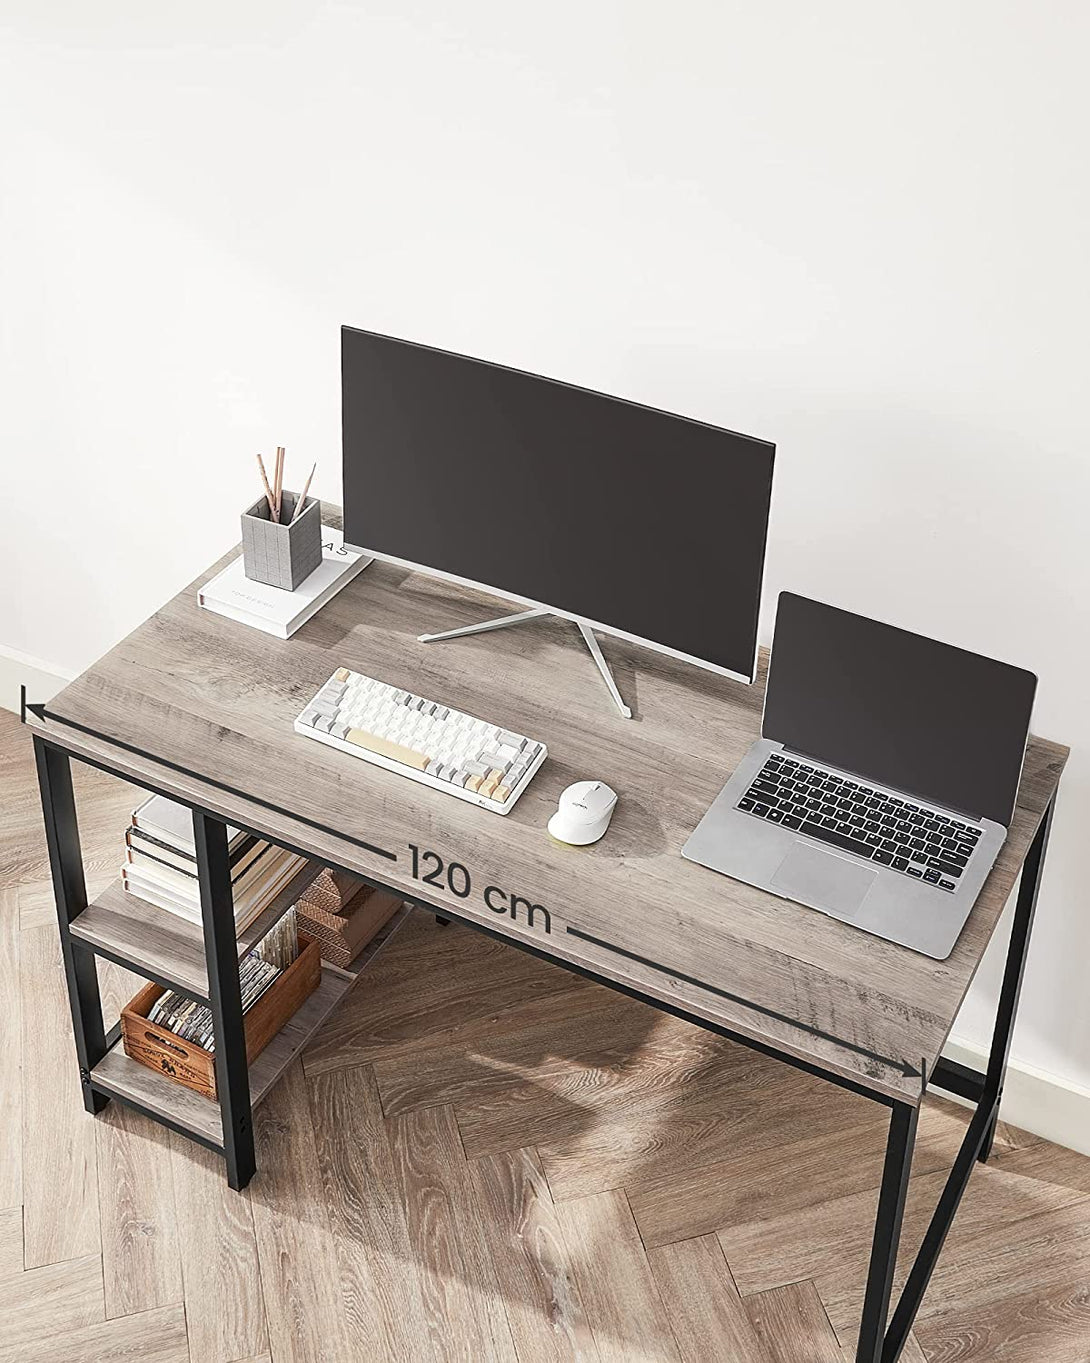 Íróasztal 120x60 cm, számítógépes asztal 2 polccal bal vagy jobb oldalon, greige-VASBÚTOR